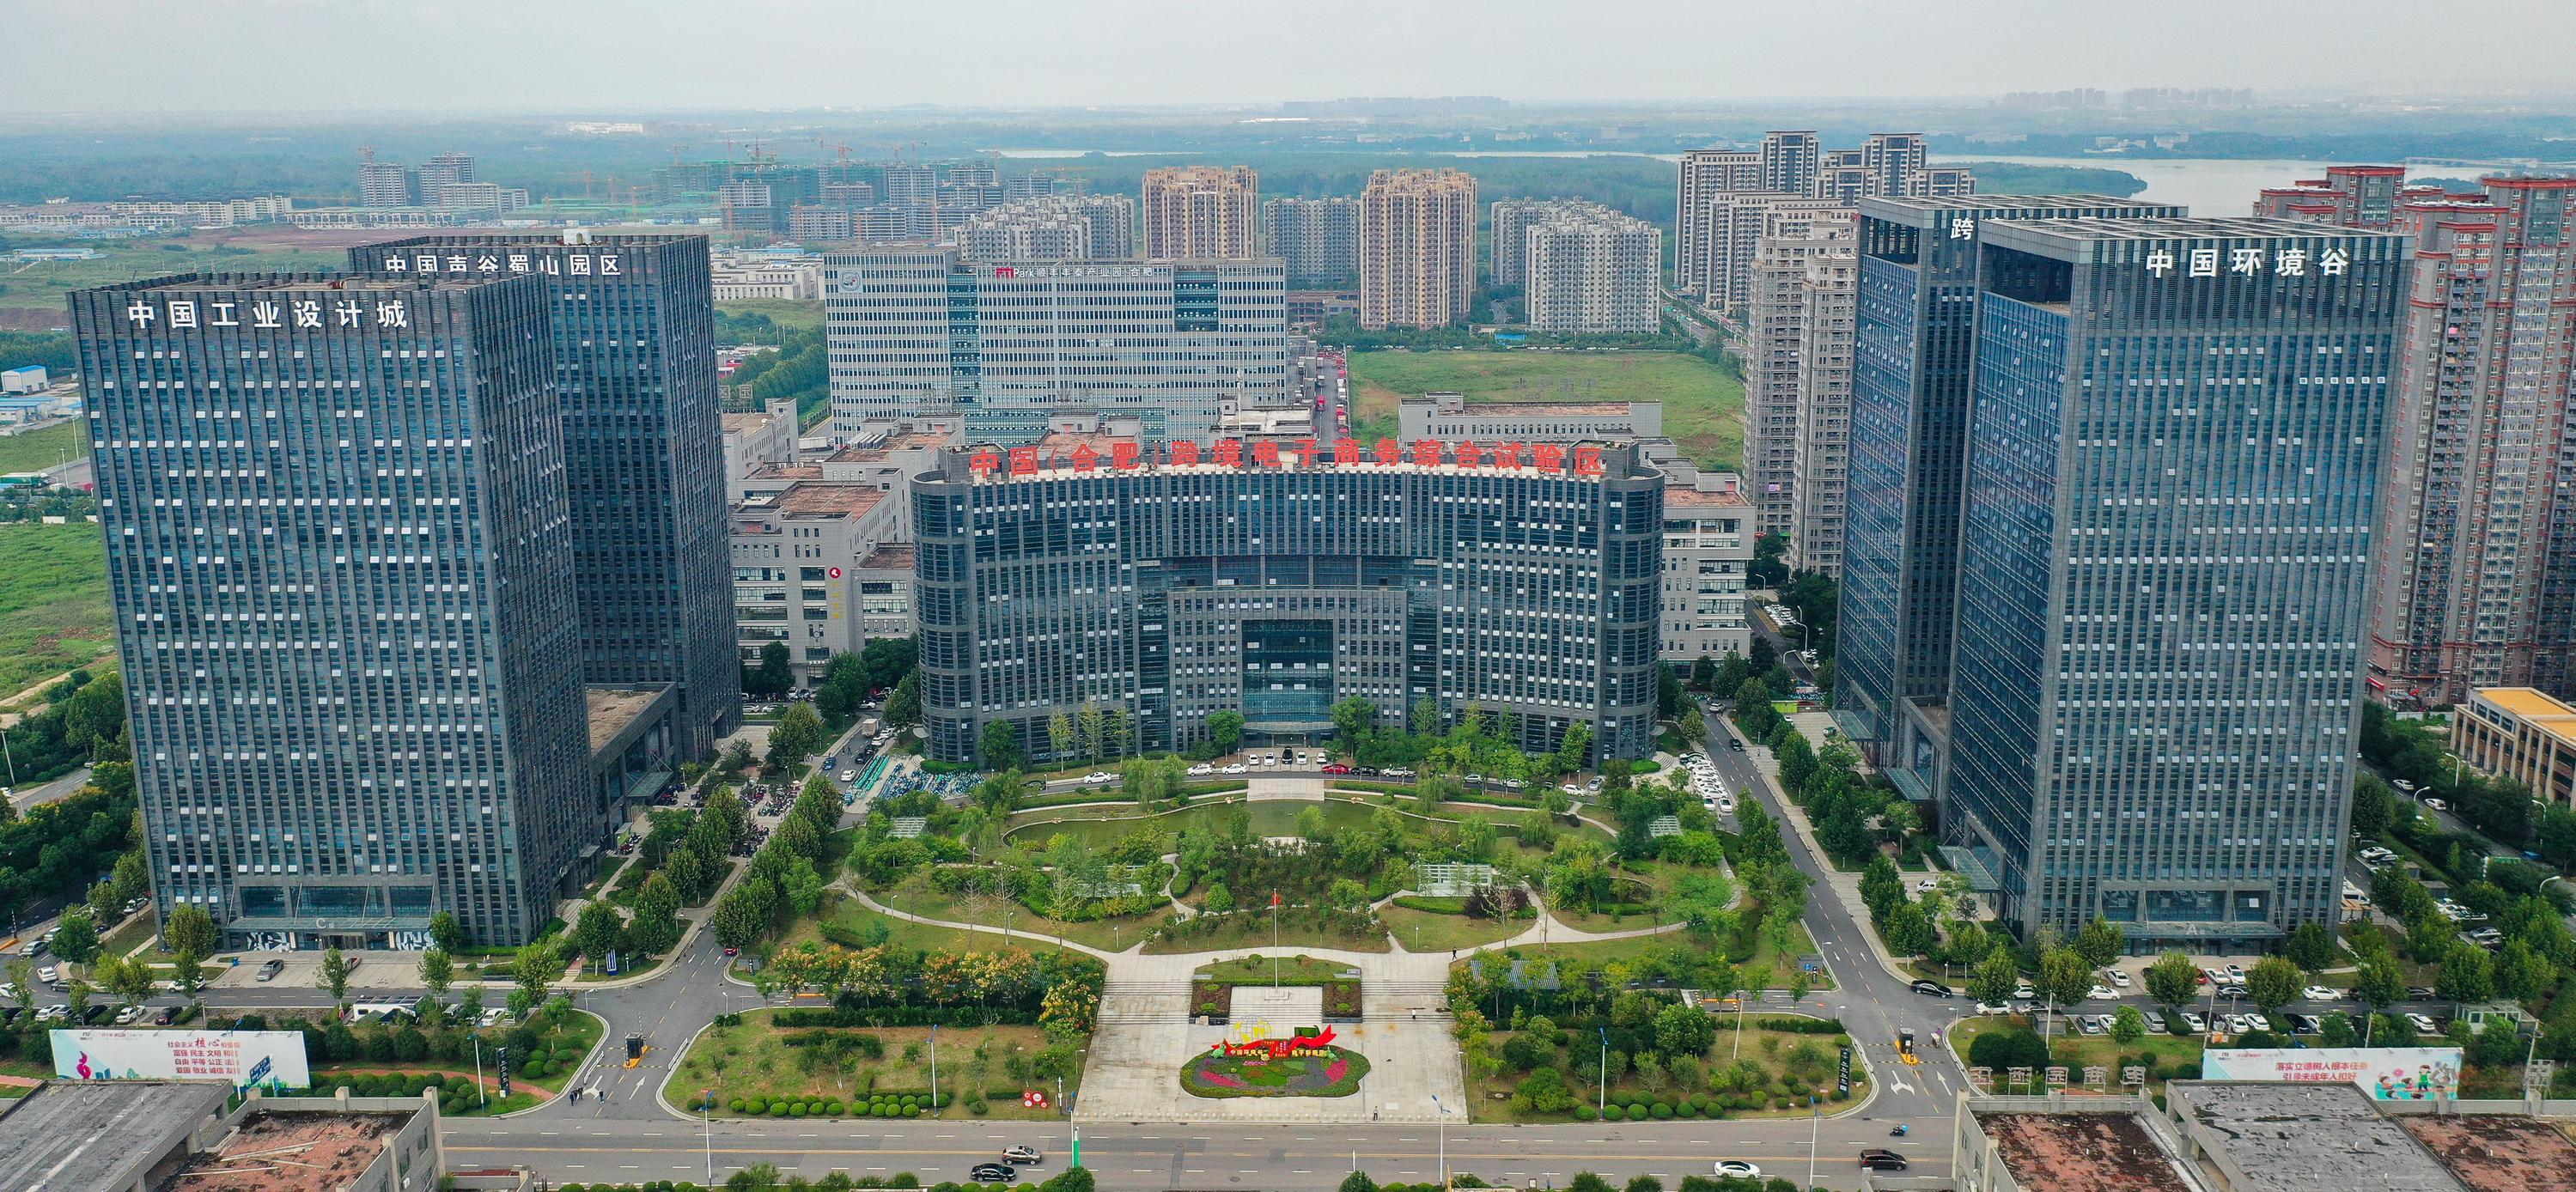 安徽新闻网 图片新闻7月27日,国家级合肥蜀山经济技术开发区揭牌